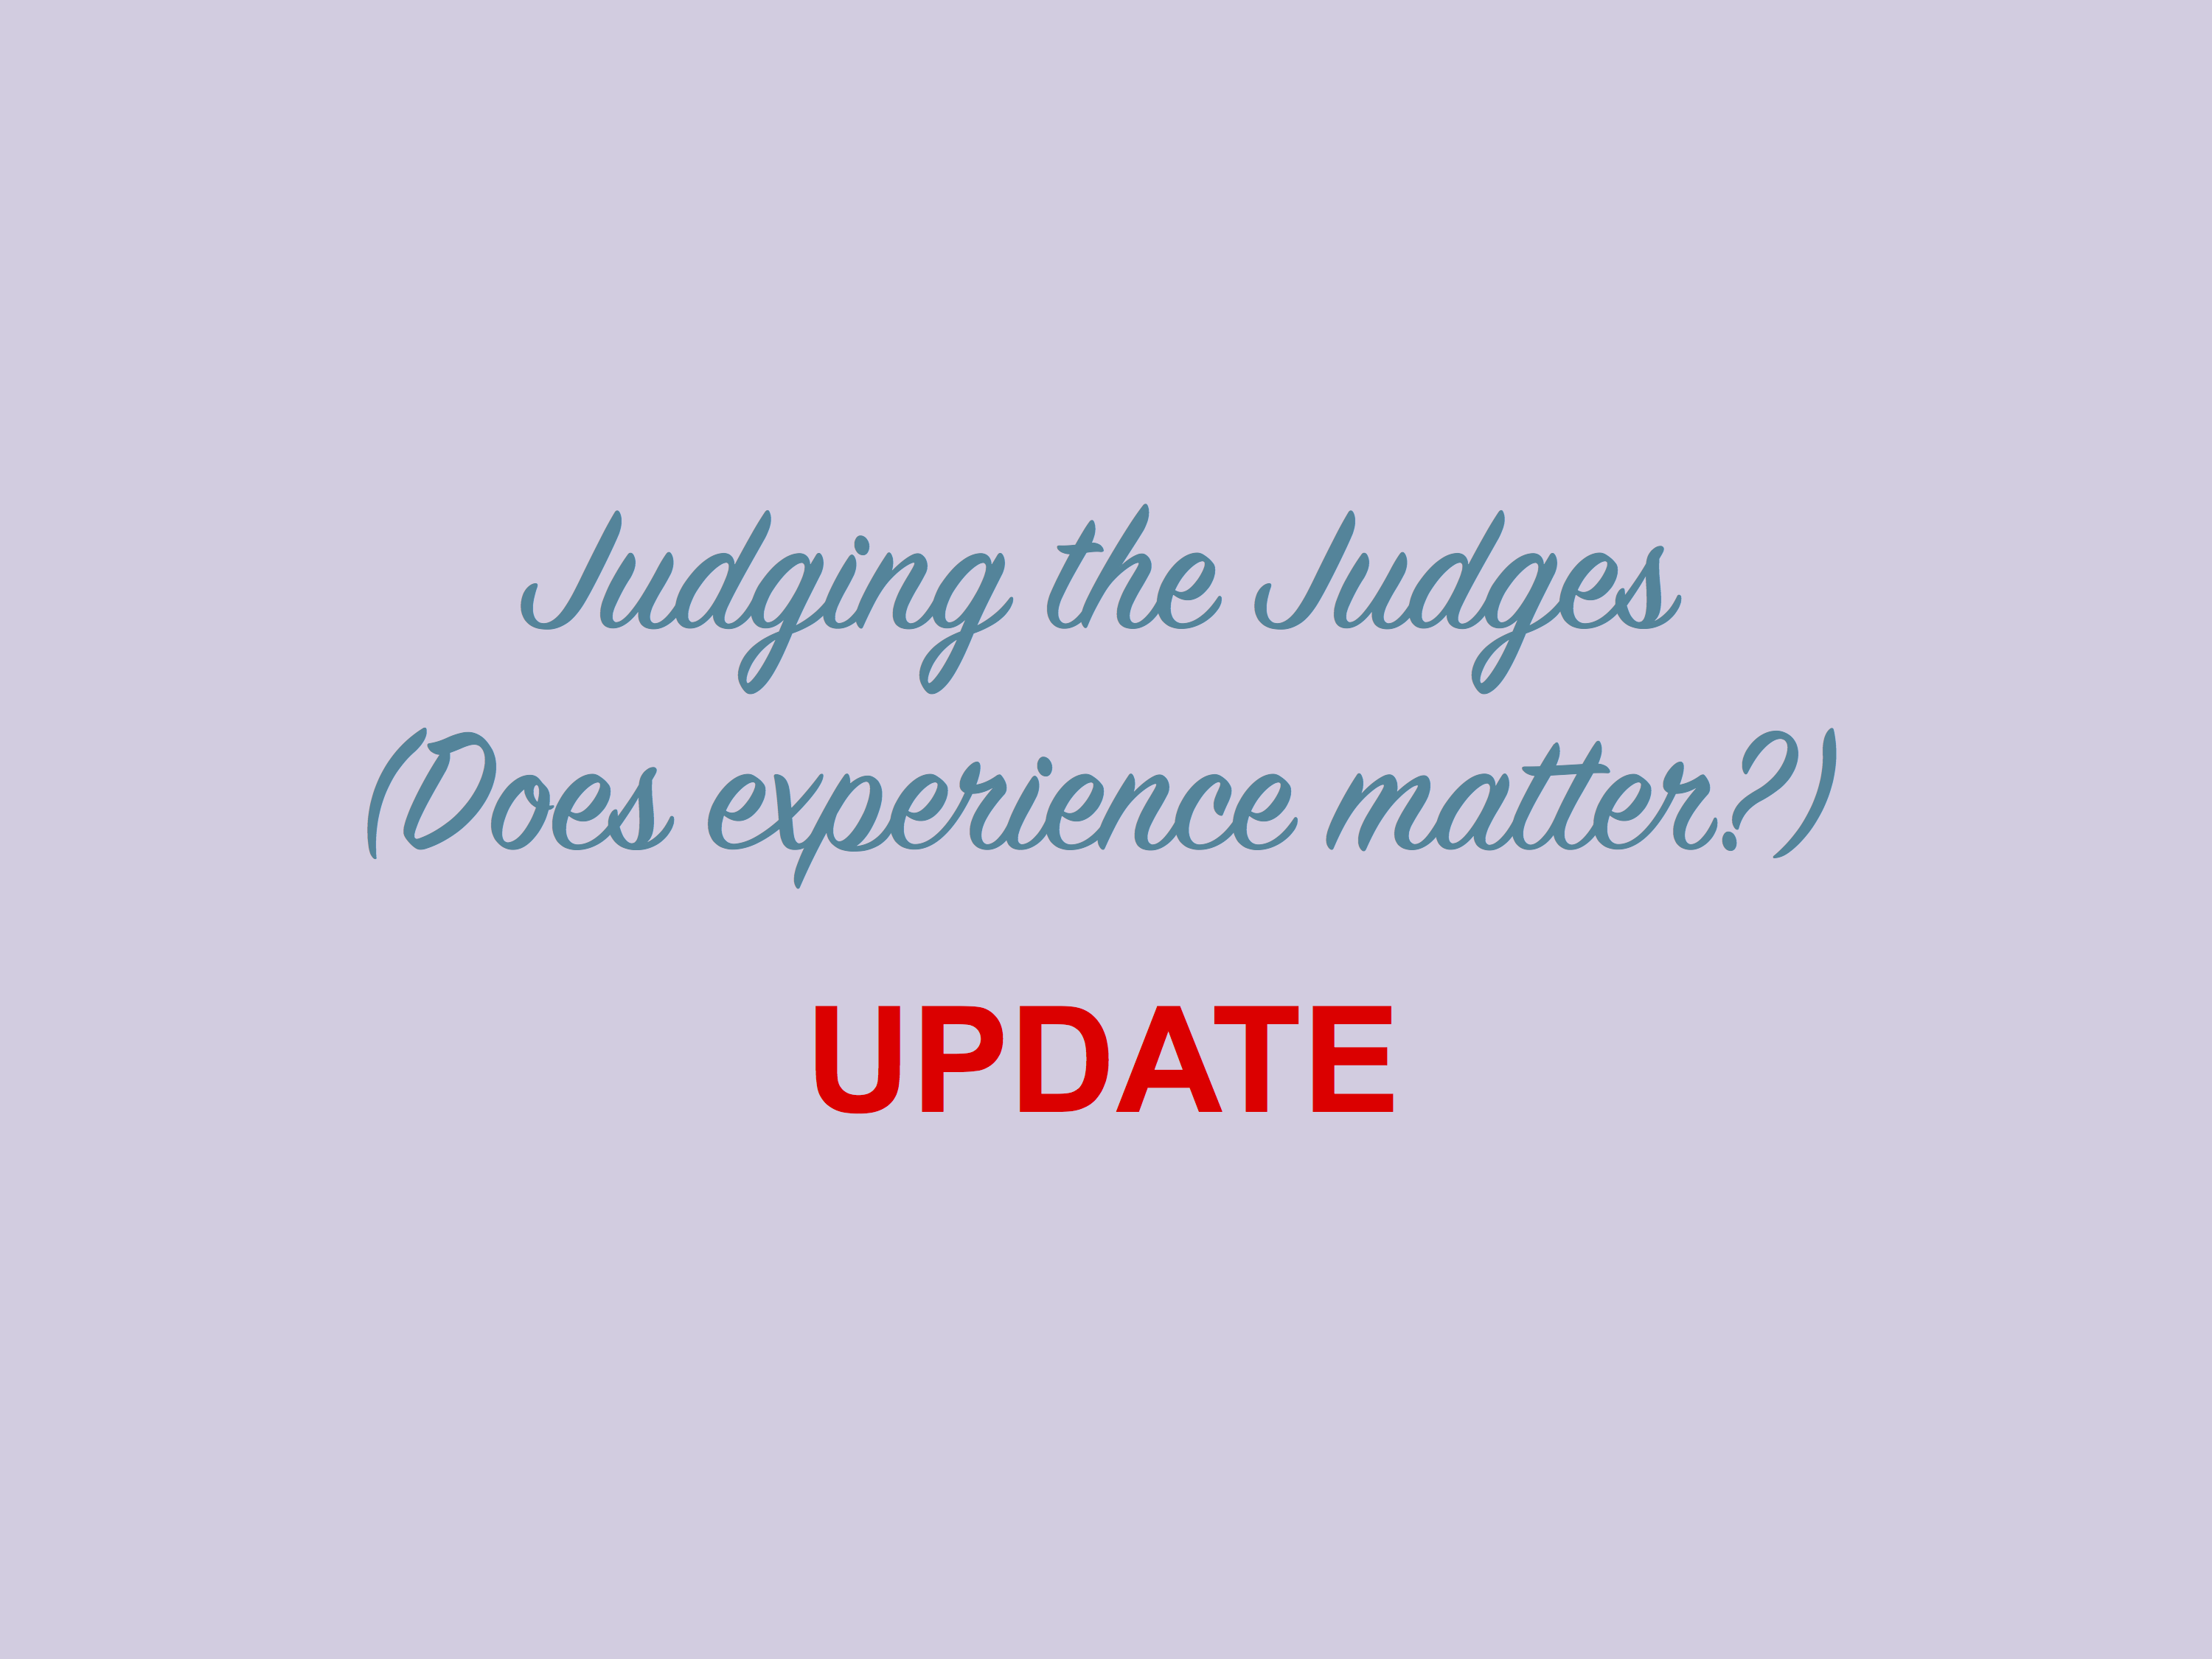 Judging the Judges: Update